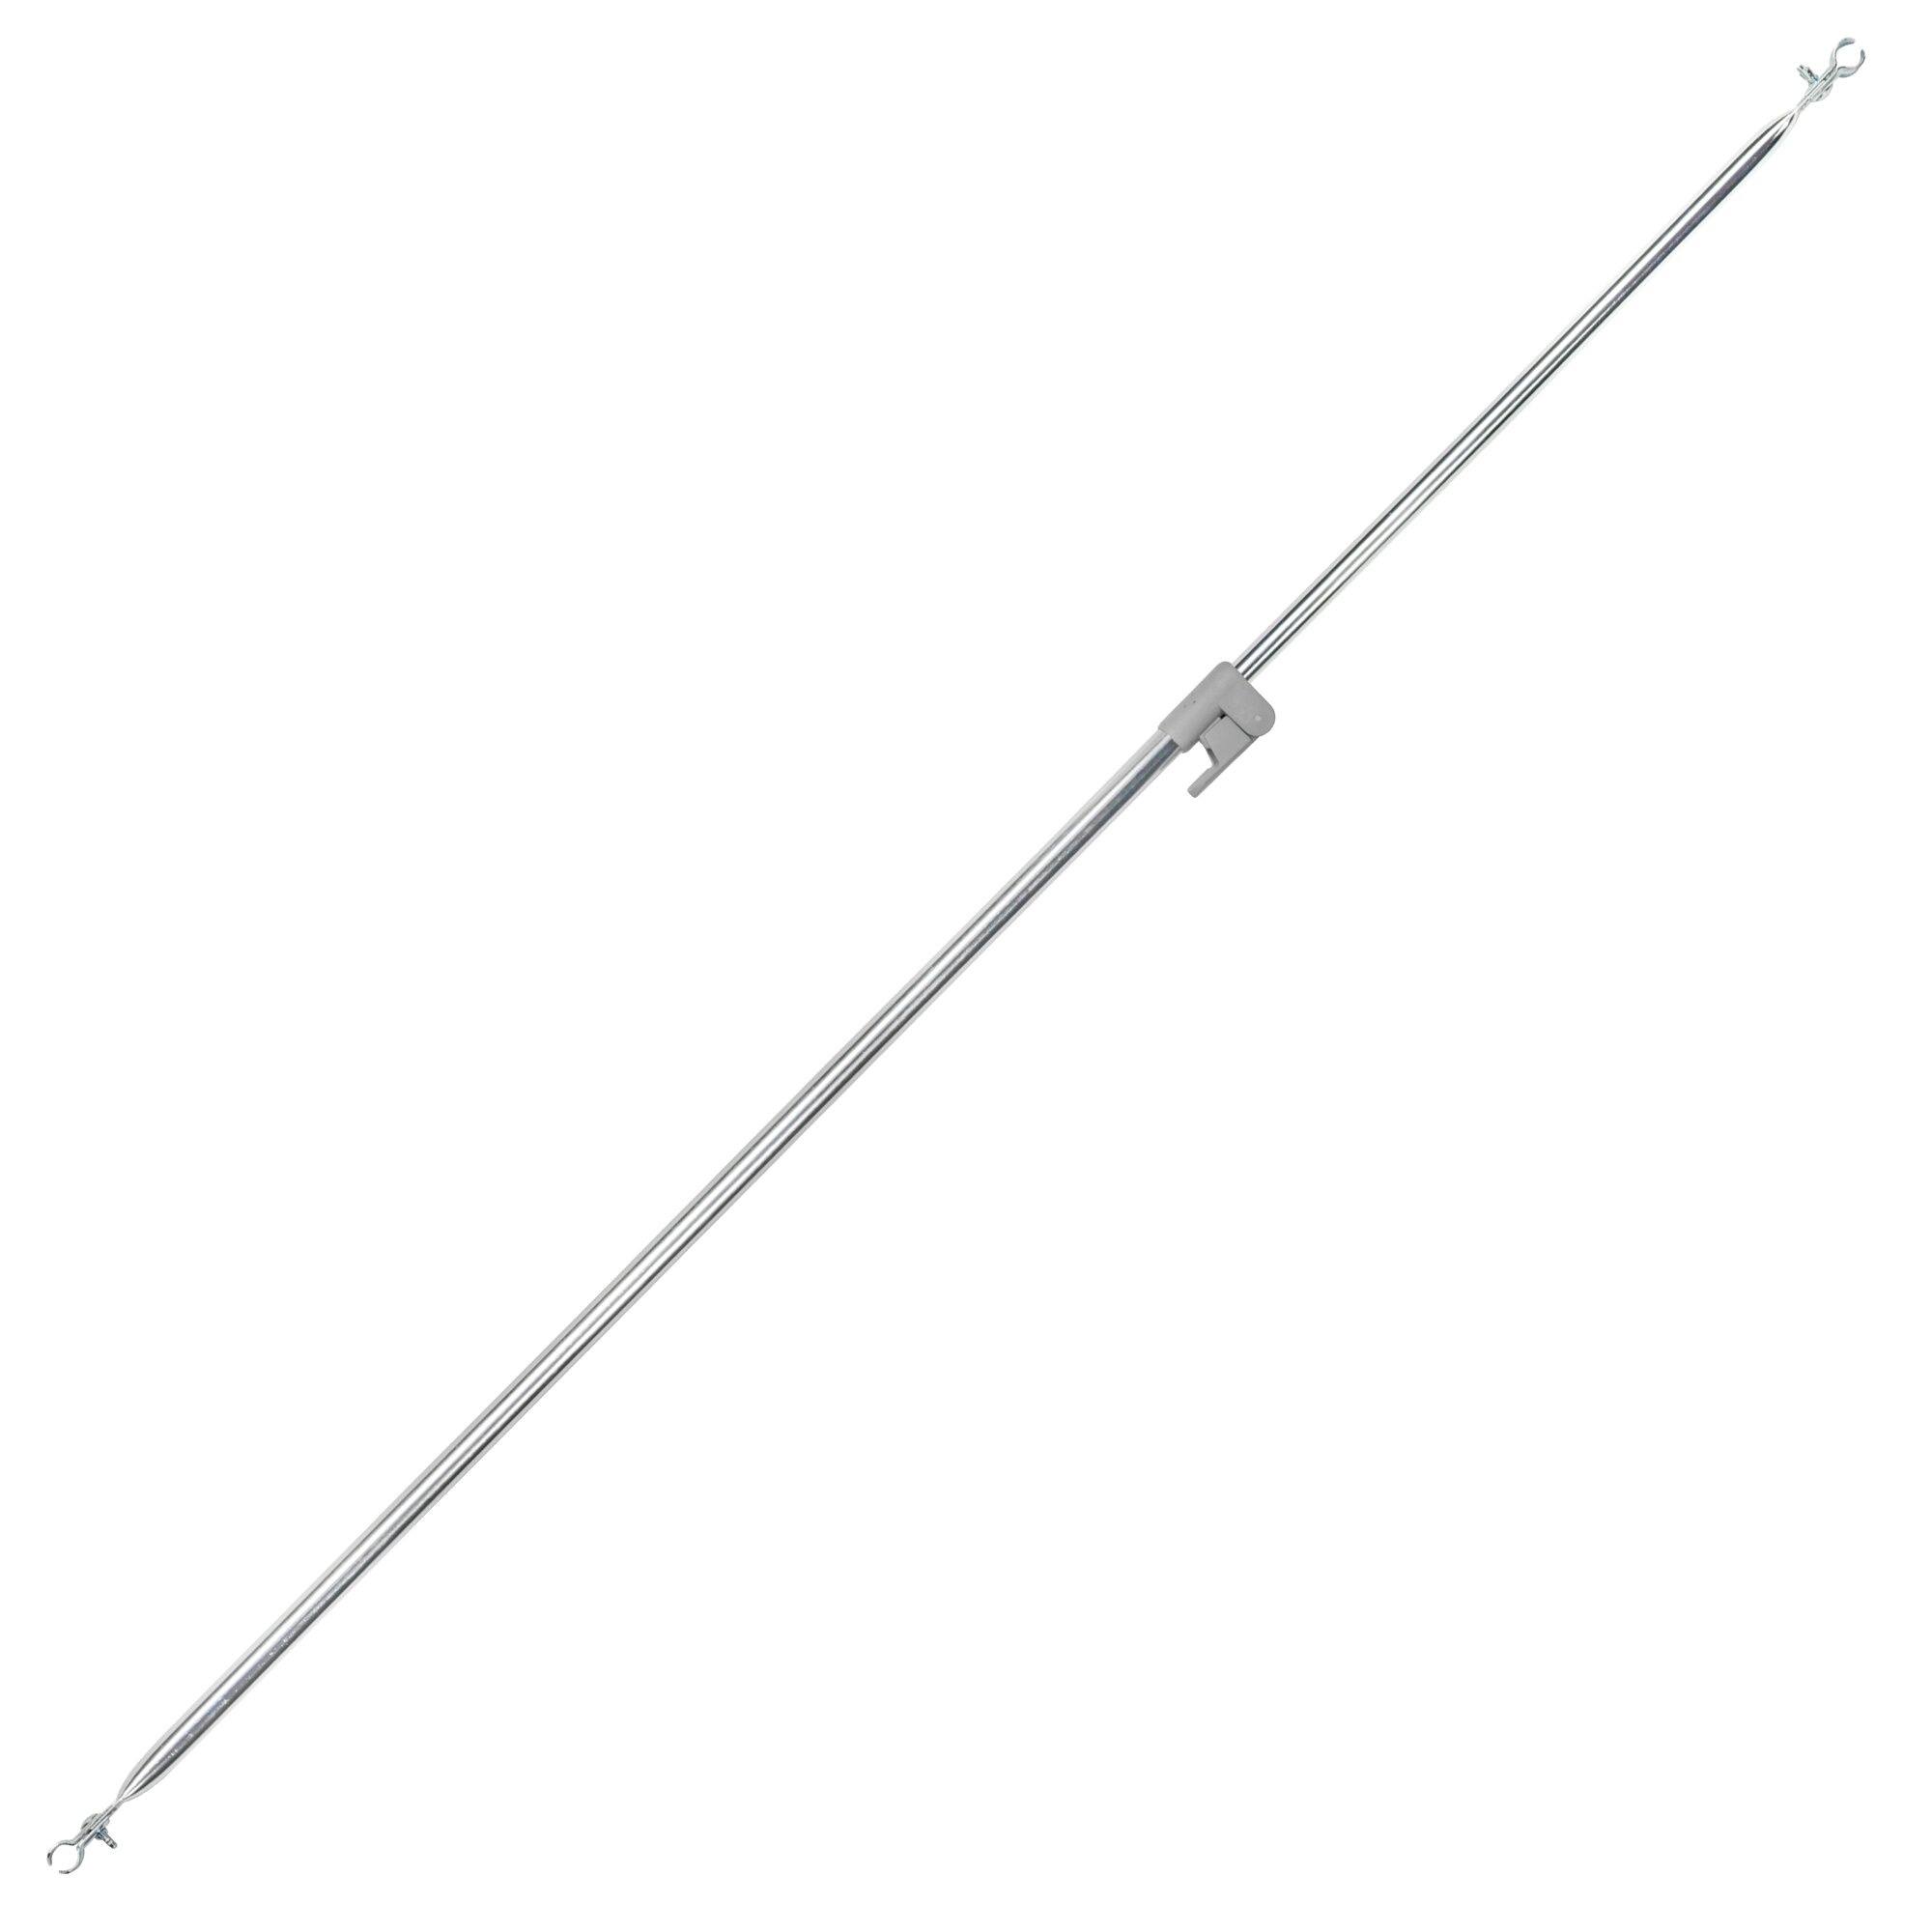 Verandastange Stahl - verstellbar für Gr. 9-14 (195-280cm)